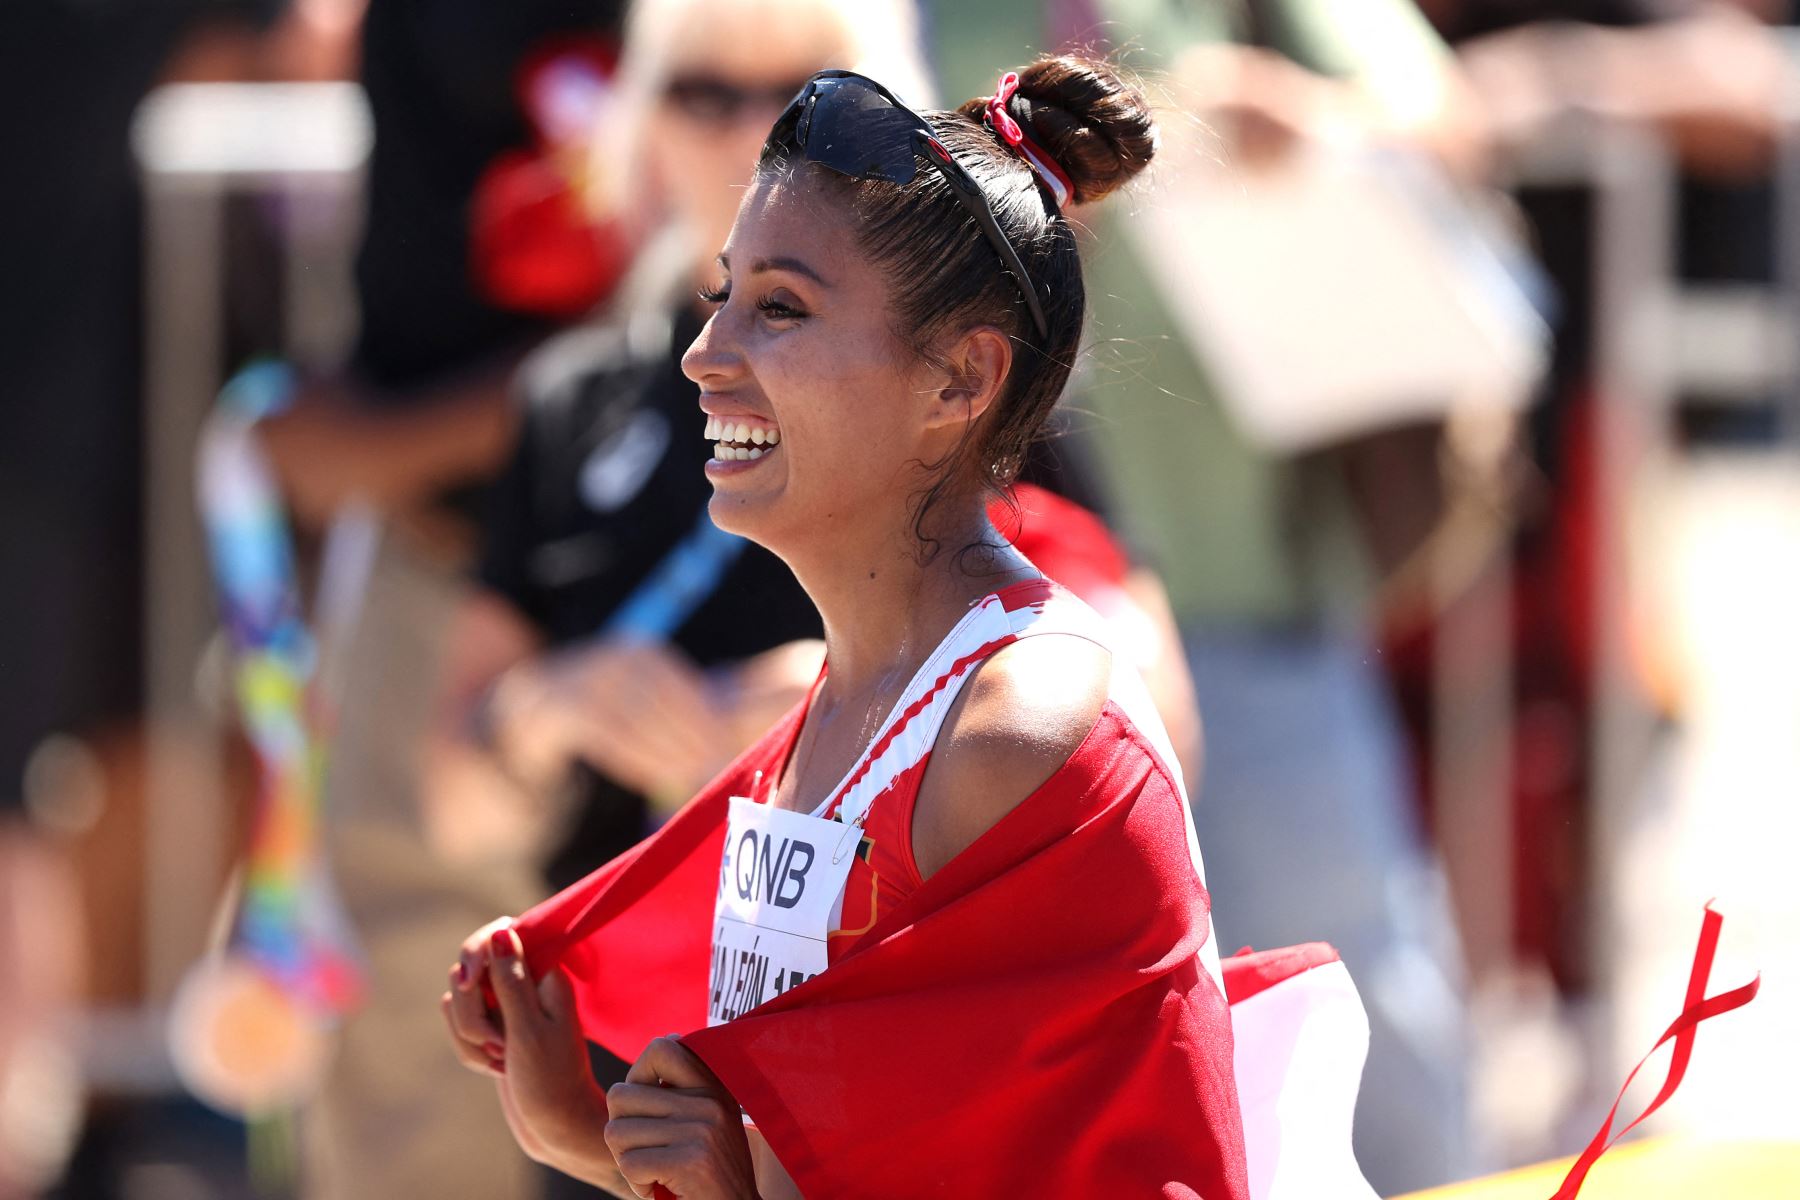 Kimberly García León del Equipo Perú celebra después de ganar el oro en la Final de Marcha de 20 Kilómetros de Mujeres el primer día del Campeonato Mundial de Atletismo Oregon22 en Hayward Field.
Foto: AFP